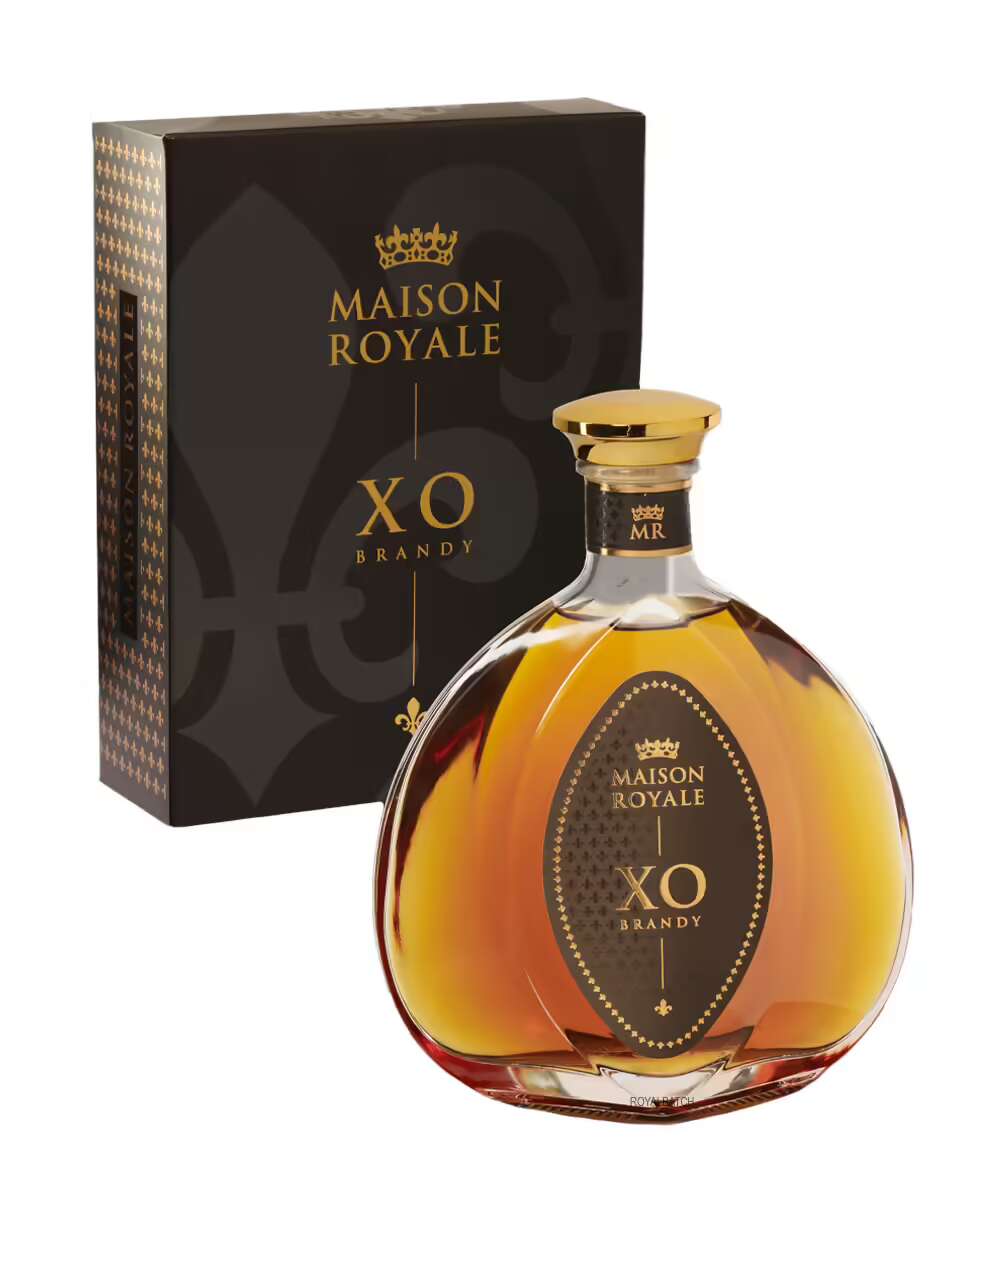 Maison Royale XO Crystal Brandy